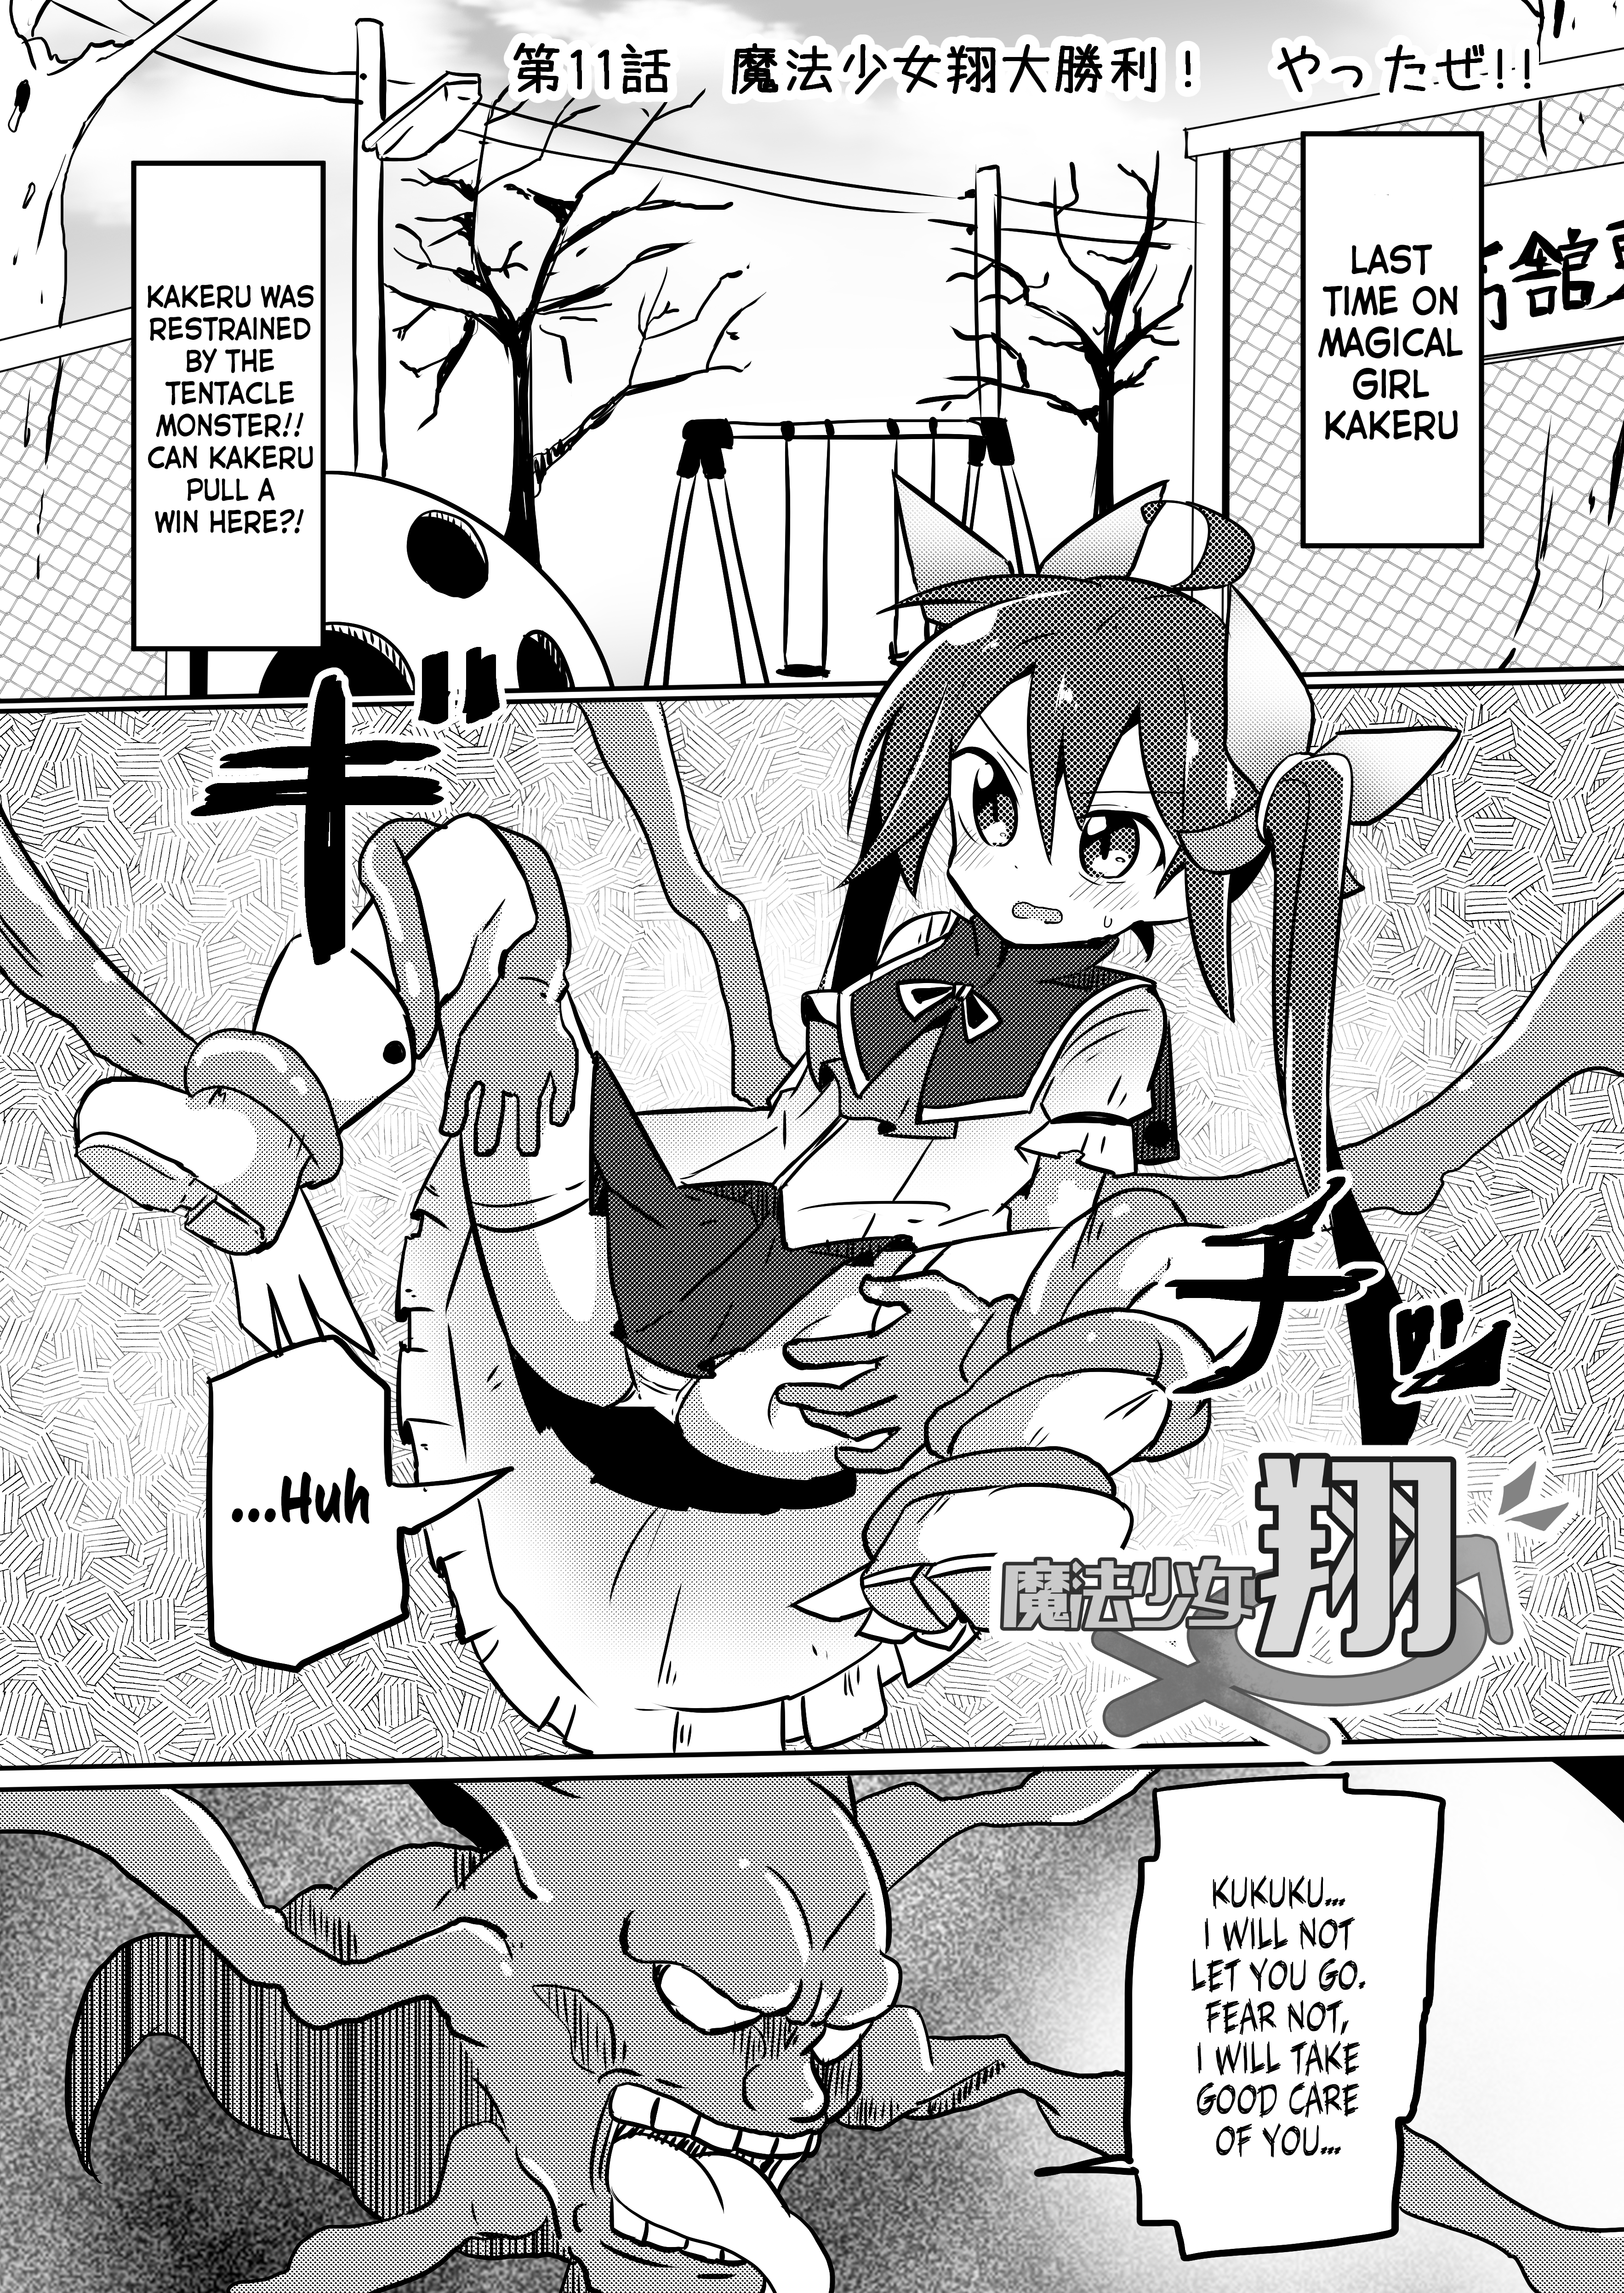 Magical Girl Kakeru - 11 page 1-9ec201a2